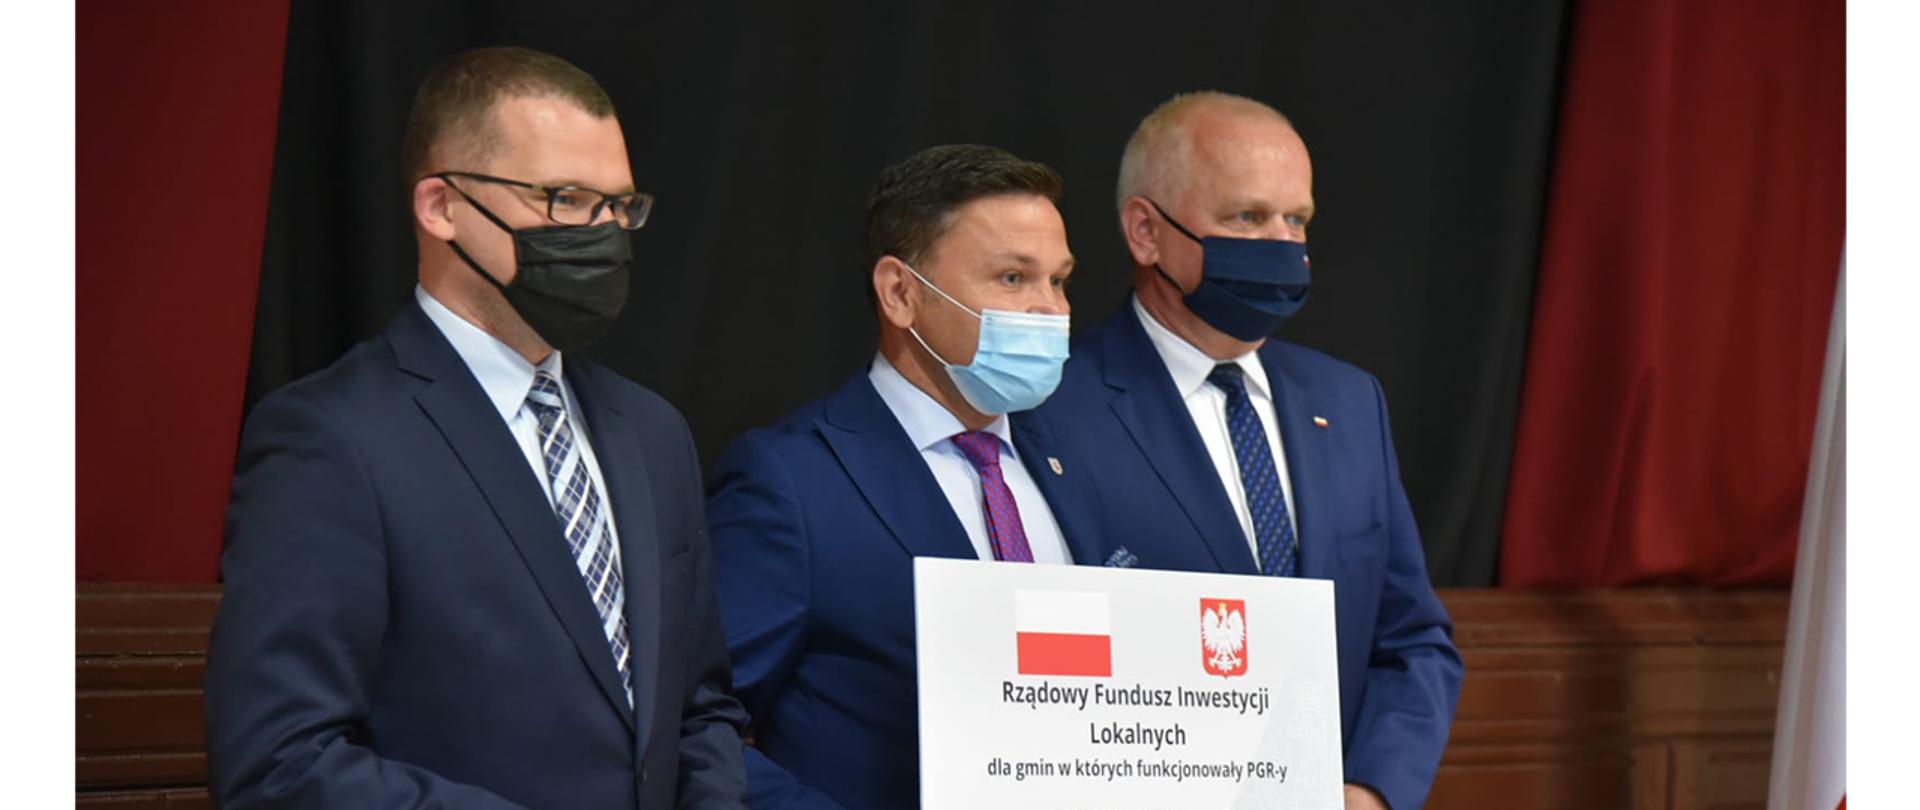 Na zdjęciu: wiceminister Paweł Szefernaker oraz wojewoda Władysław Dajczak wręczają promesę przedstawicielowi samorządu 